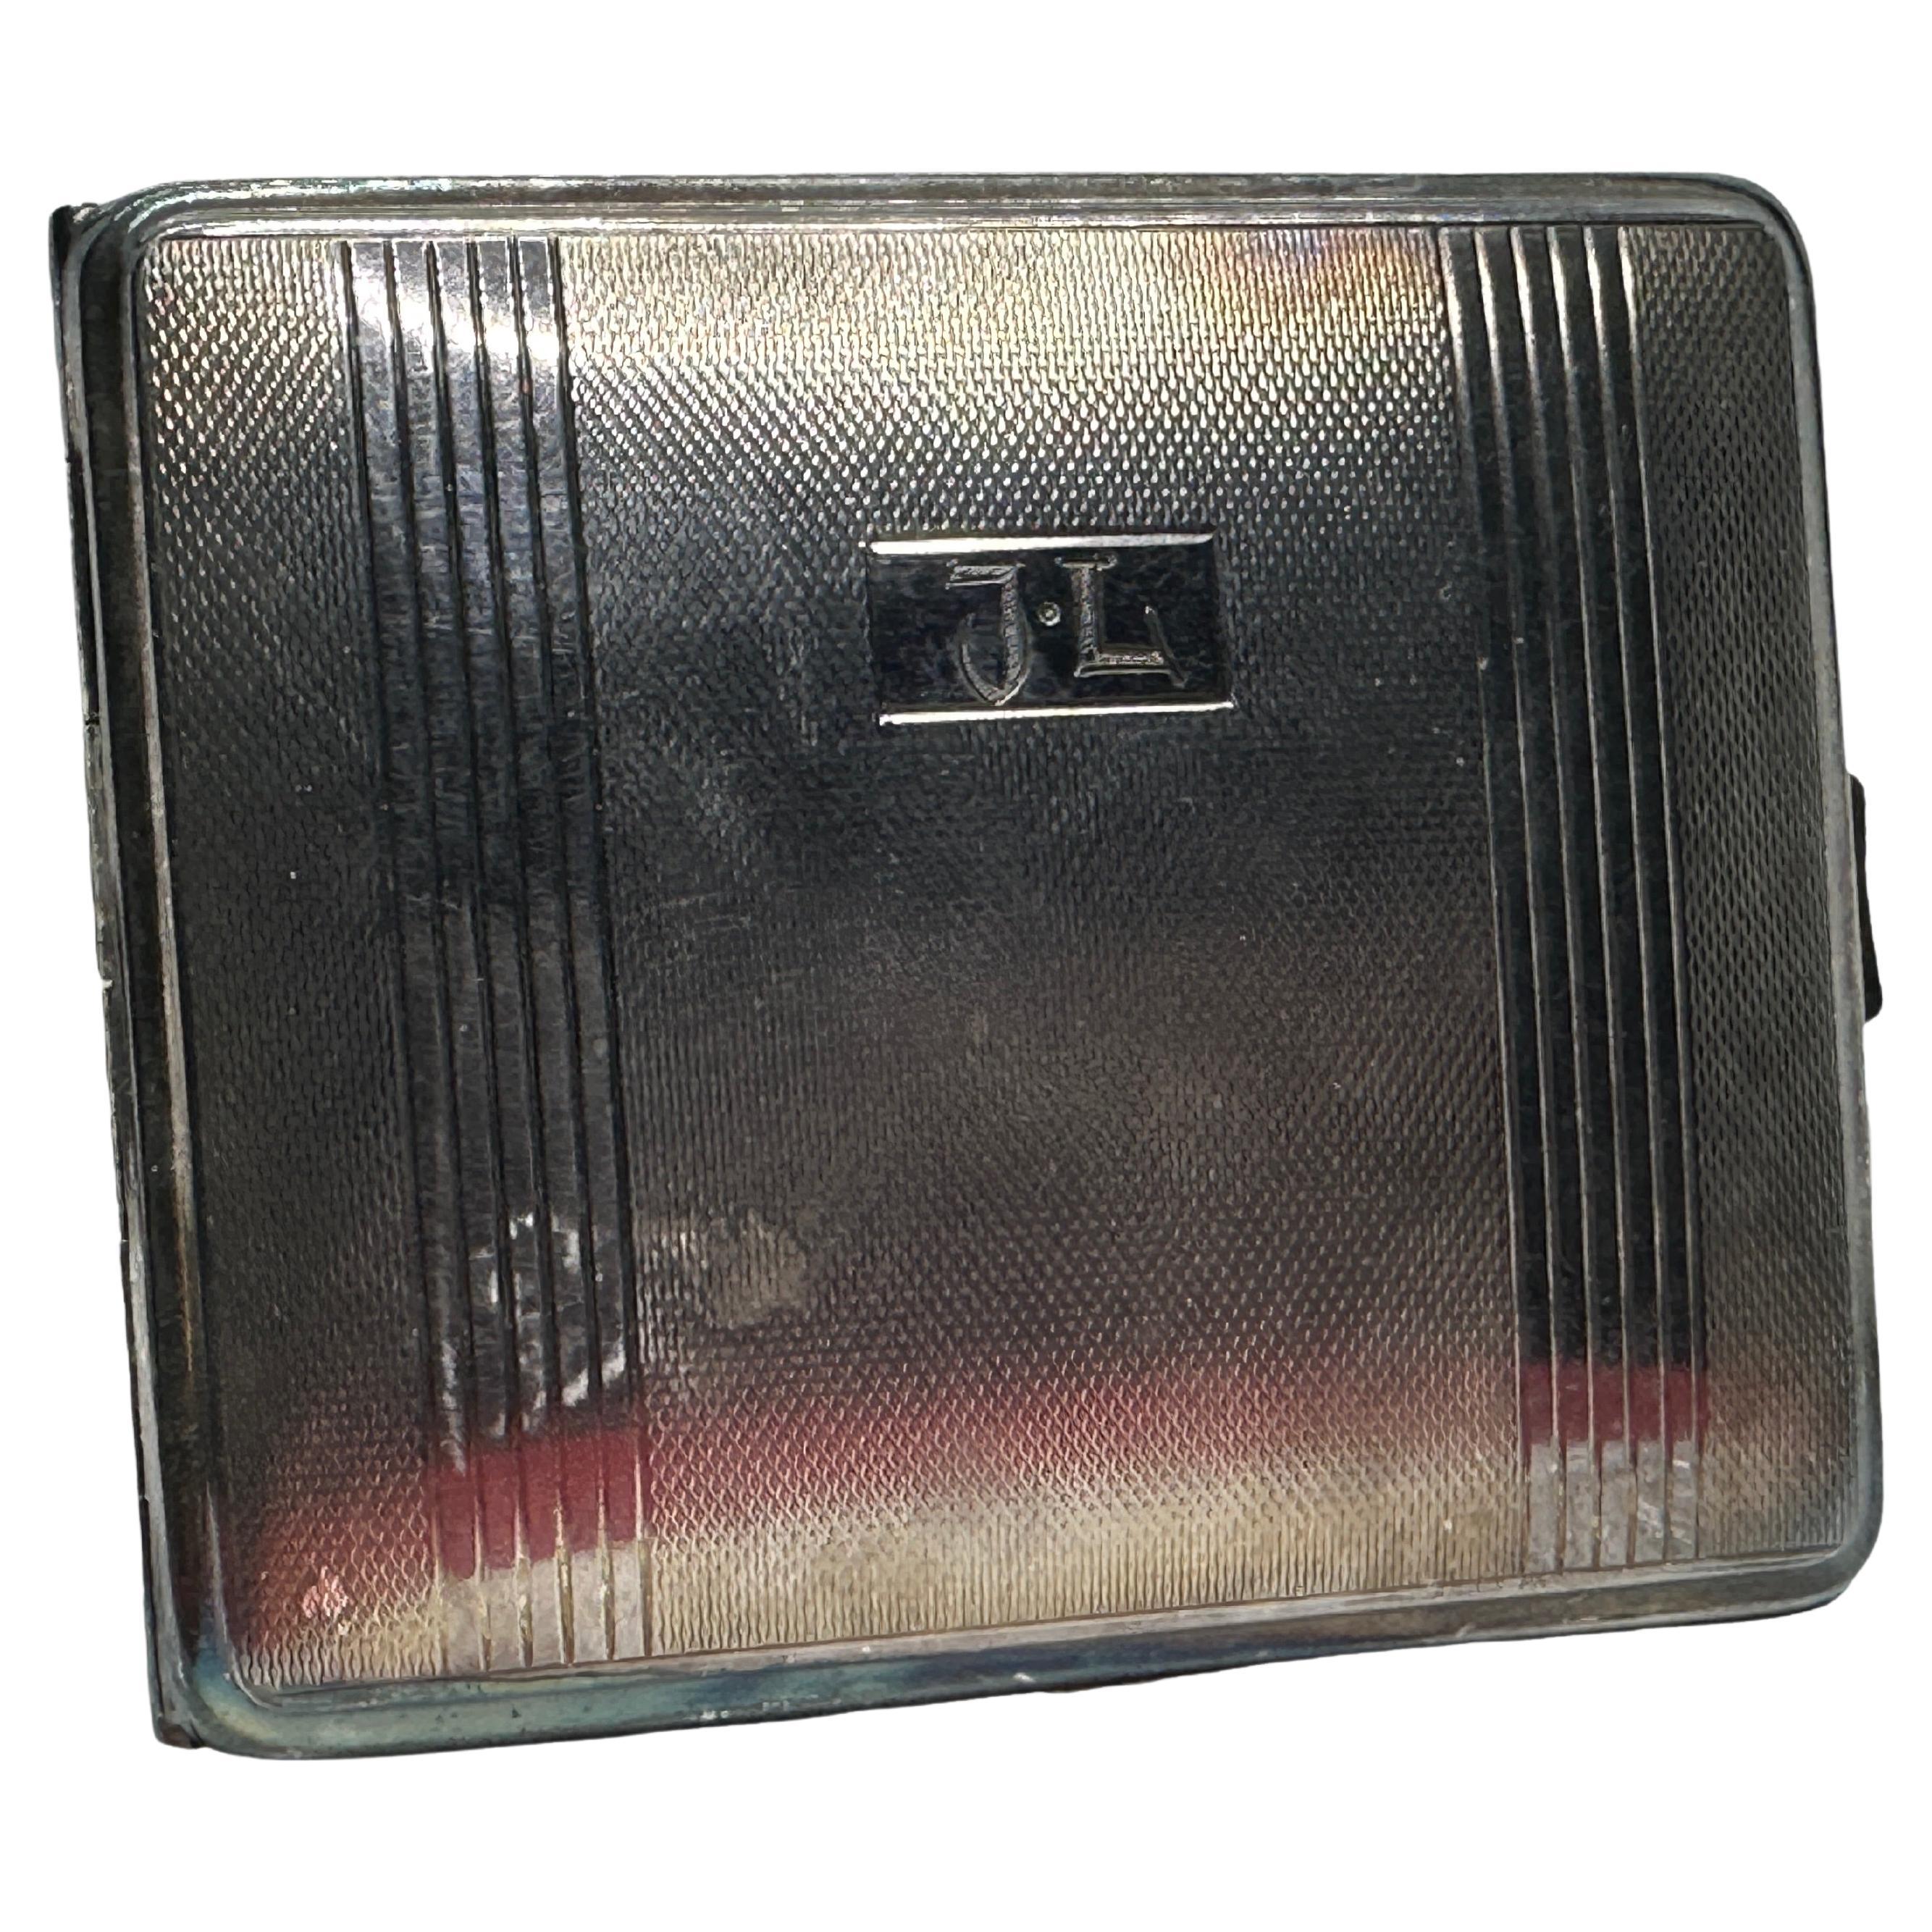 Art Deco Silver Plate Cigarette Case, Vintage German, Monogram J.L